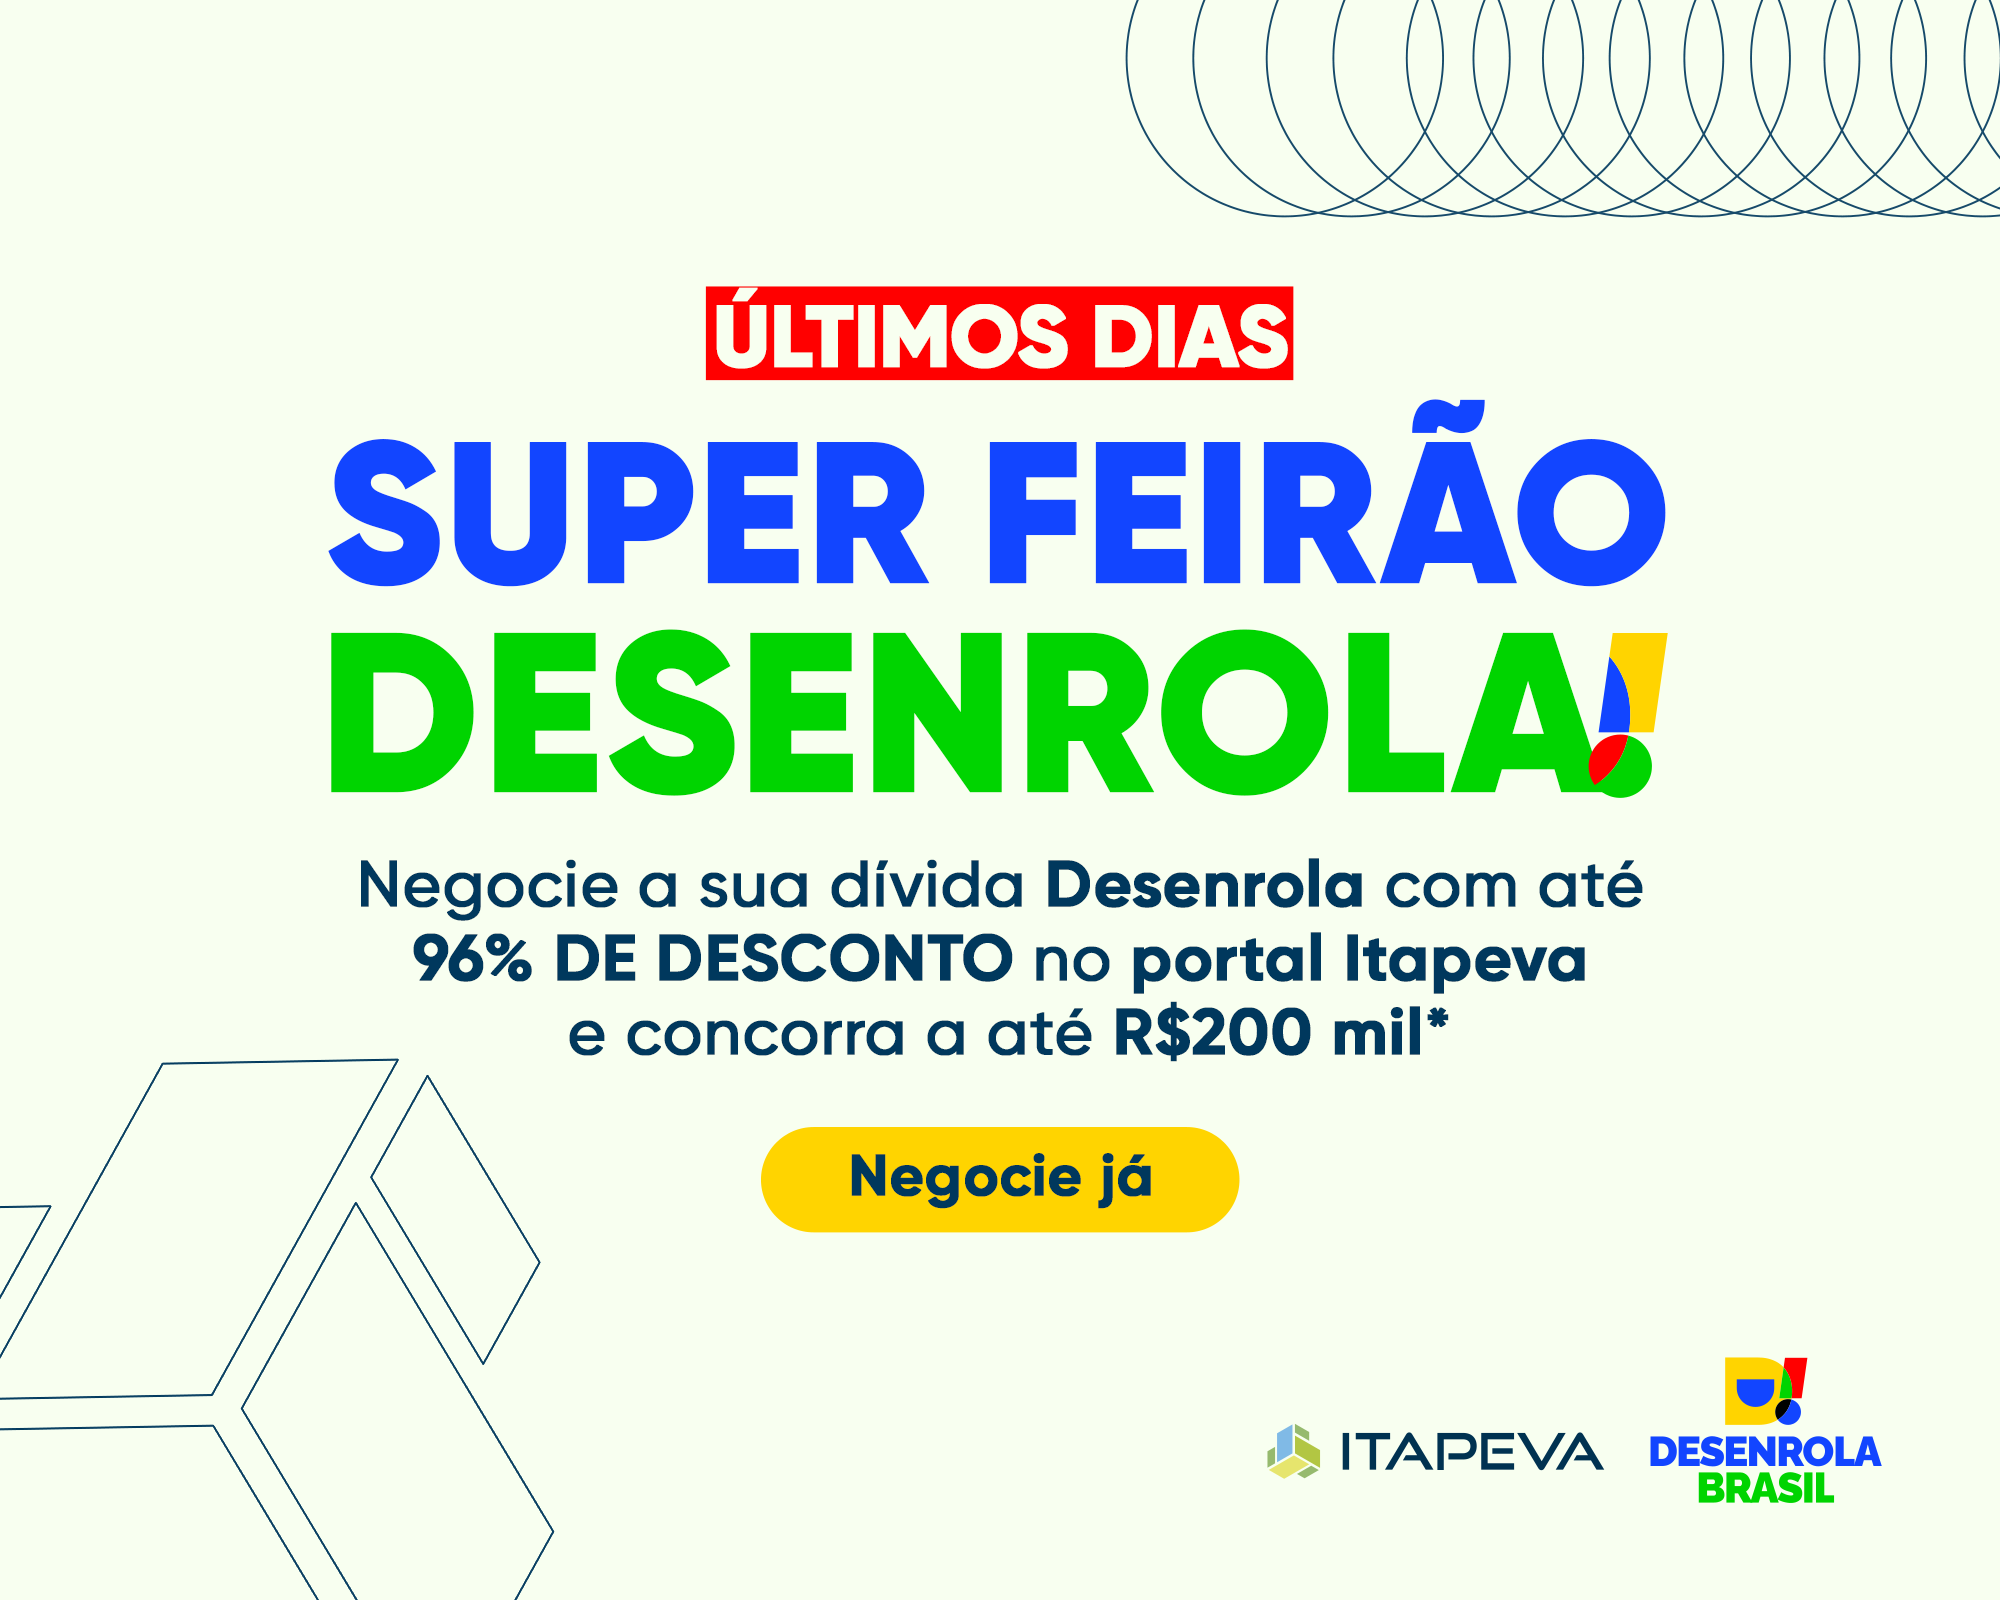 Último dias. Super Feirão Desenrola. Negocie sua dívida Desenrola com até 96% de desconto no portal Itapeva e concorra a R$200 mil. 